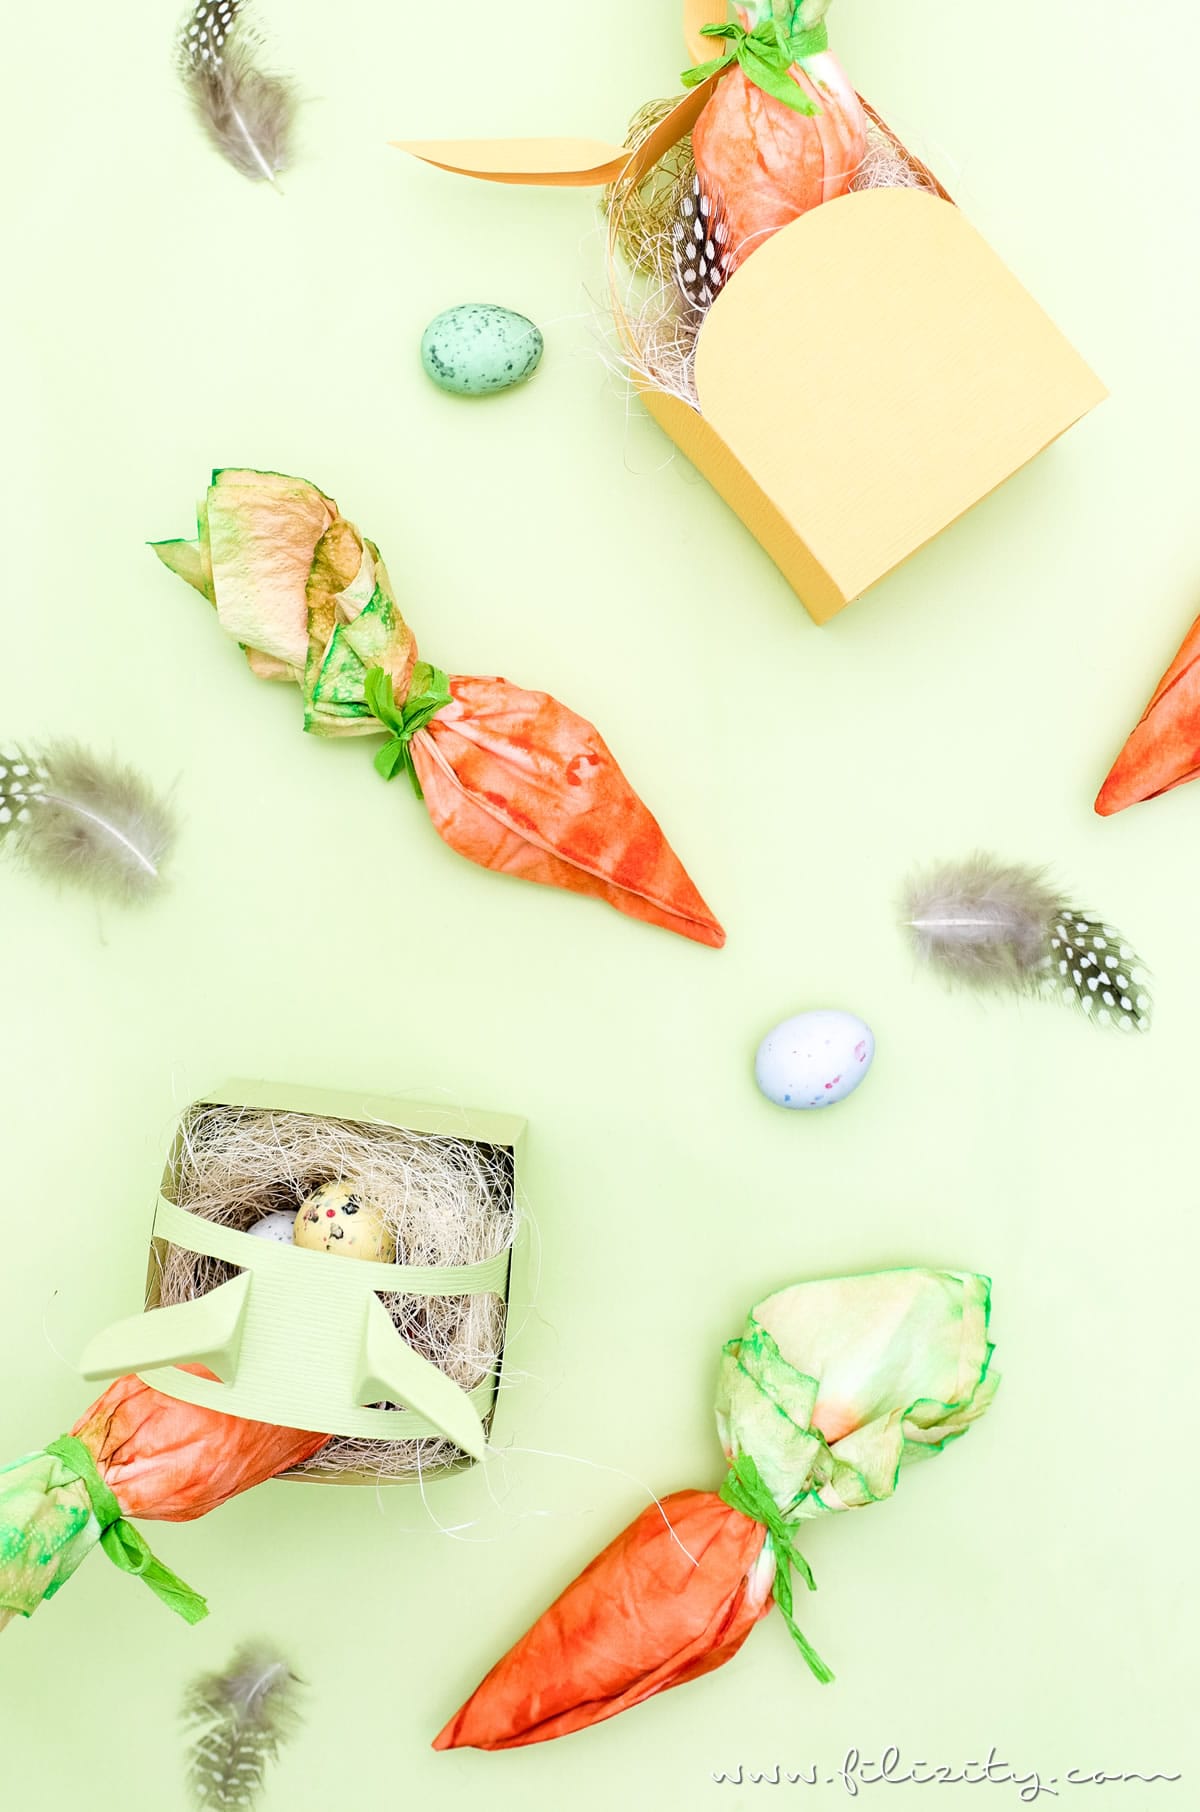 Ostergeschenke verpacken mit DIY Möhrchen-Geschenkverpackung aus Tempo Taschentüchern | Kreative Geschenkverpackung selber machen | Filizity.com | DIY-Blog aus dem Rheinland #tempoworld #tempo #ostern